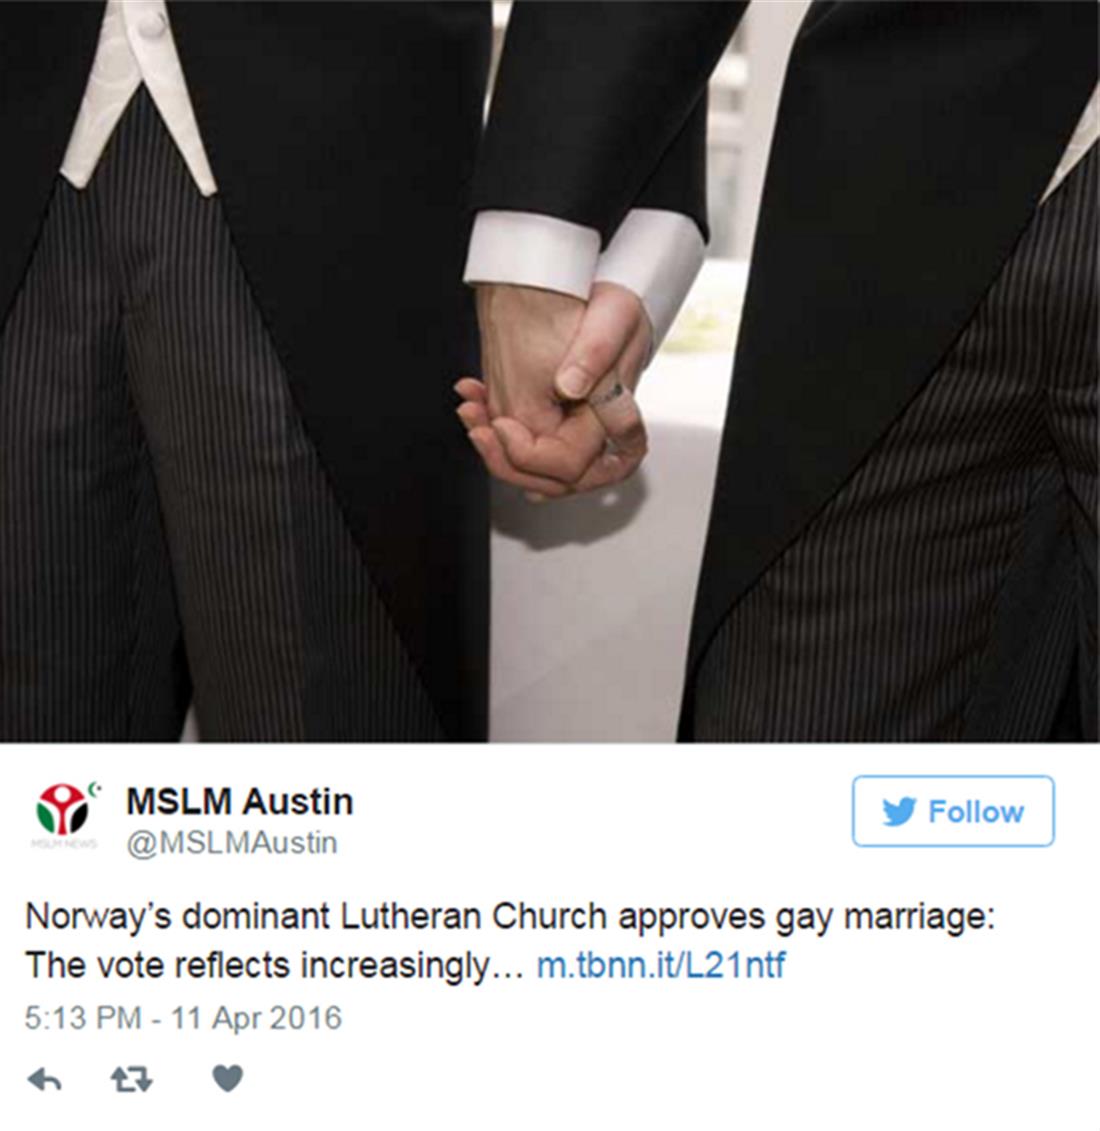 Νορβηγία - εκκλησία - ψήφισμα - gay - γάμος - Γάμοι ομοφυλόφιλων - Λουθηρανική Εκκλησία